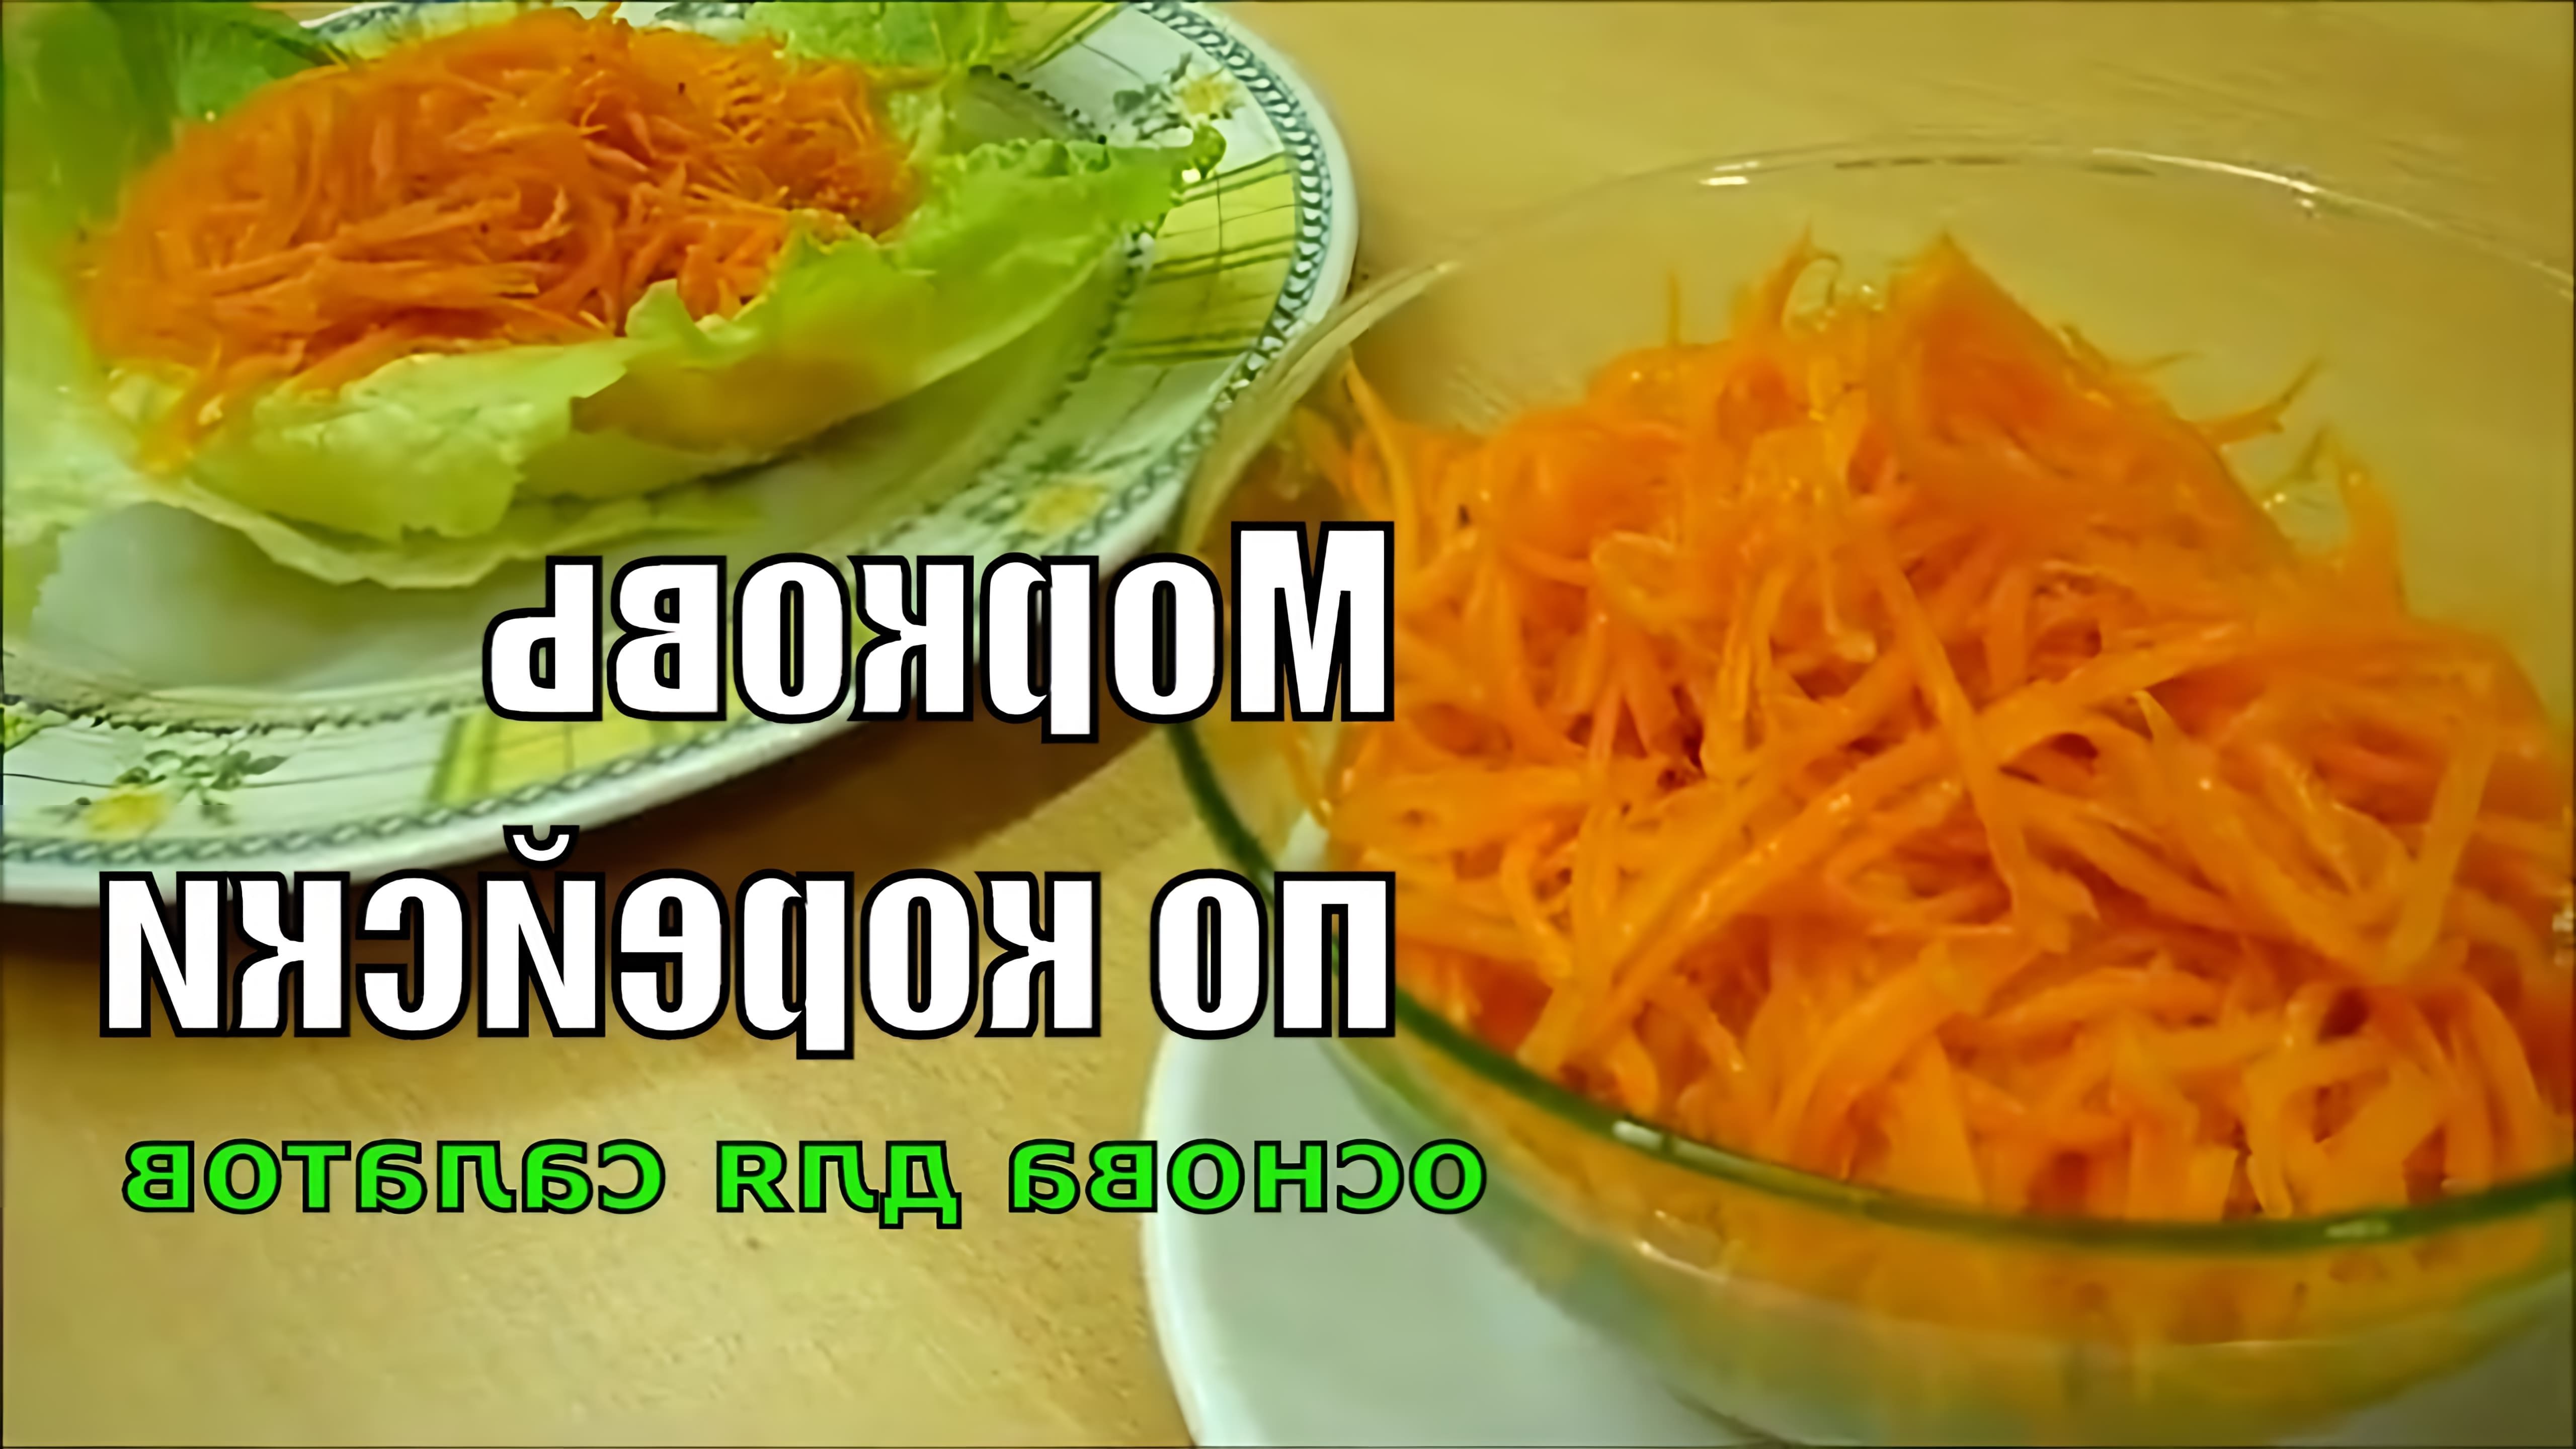 В этом видео показан классический рецепт корейской морковки, который может стать базой для различных салатов